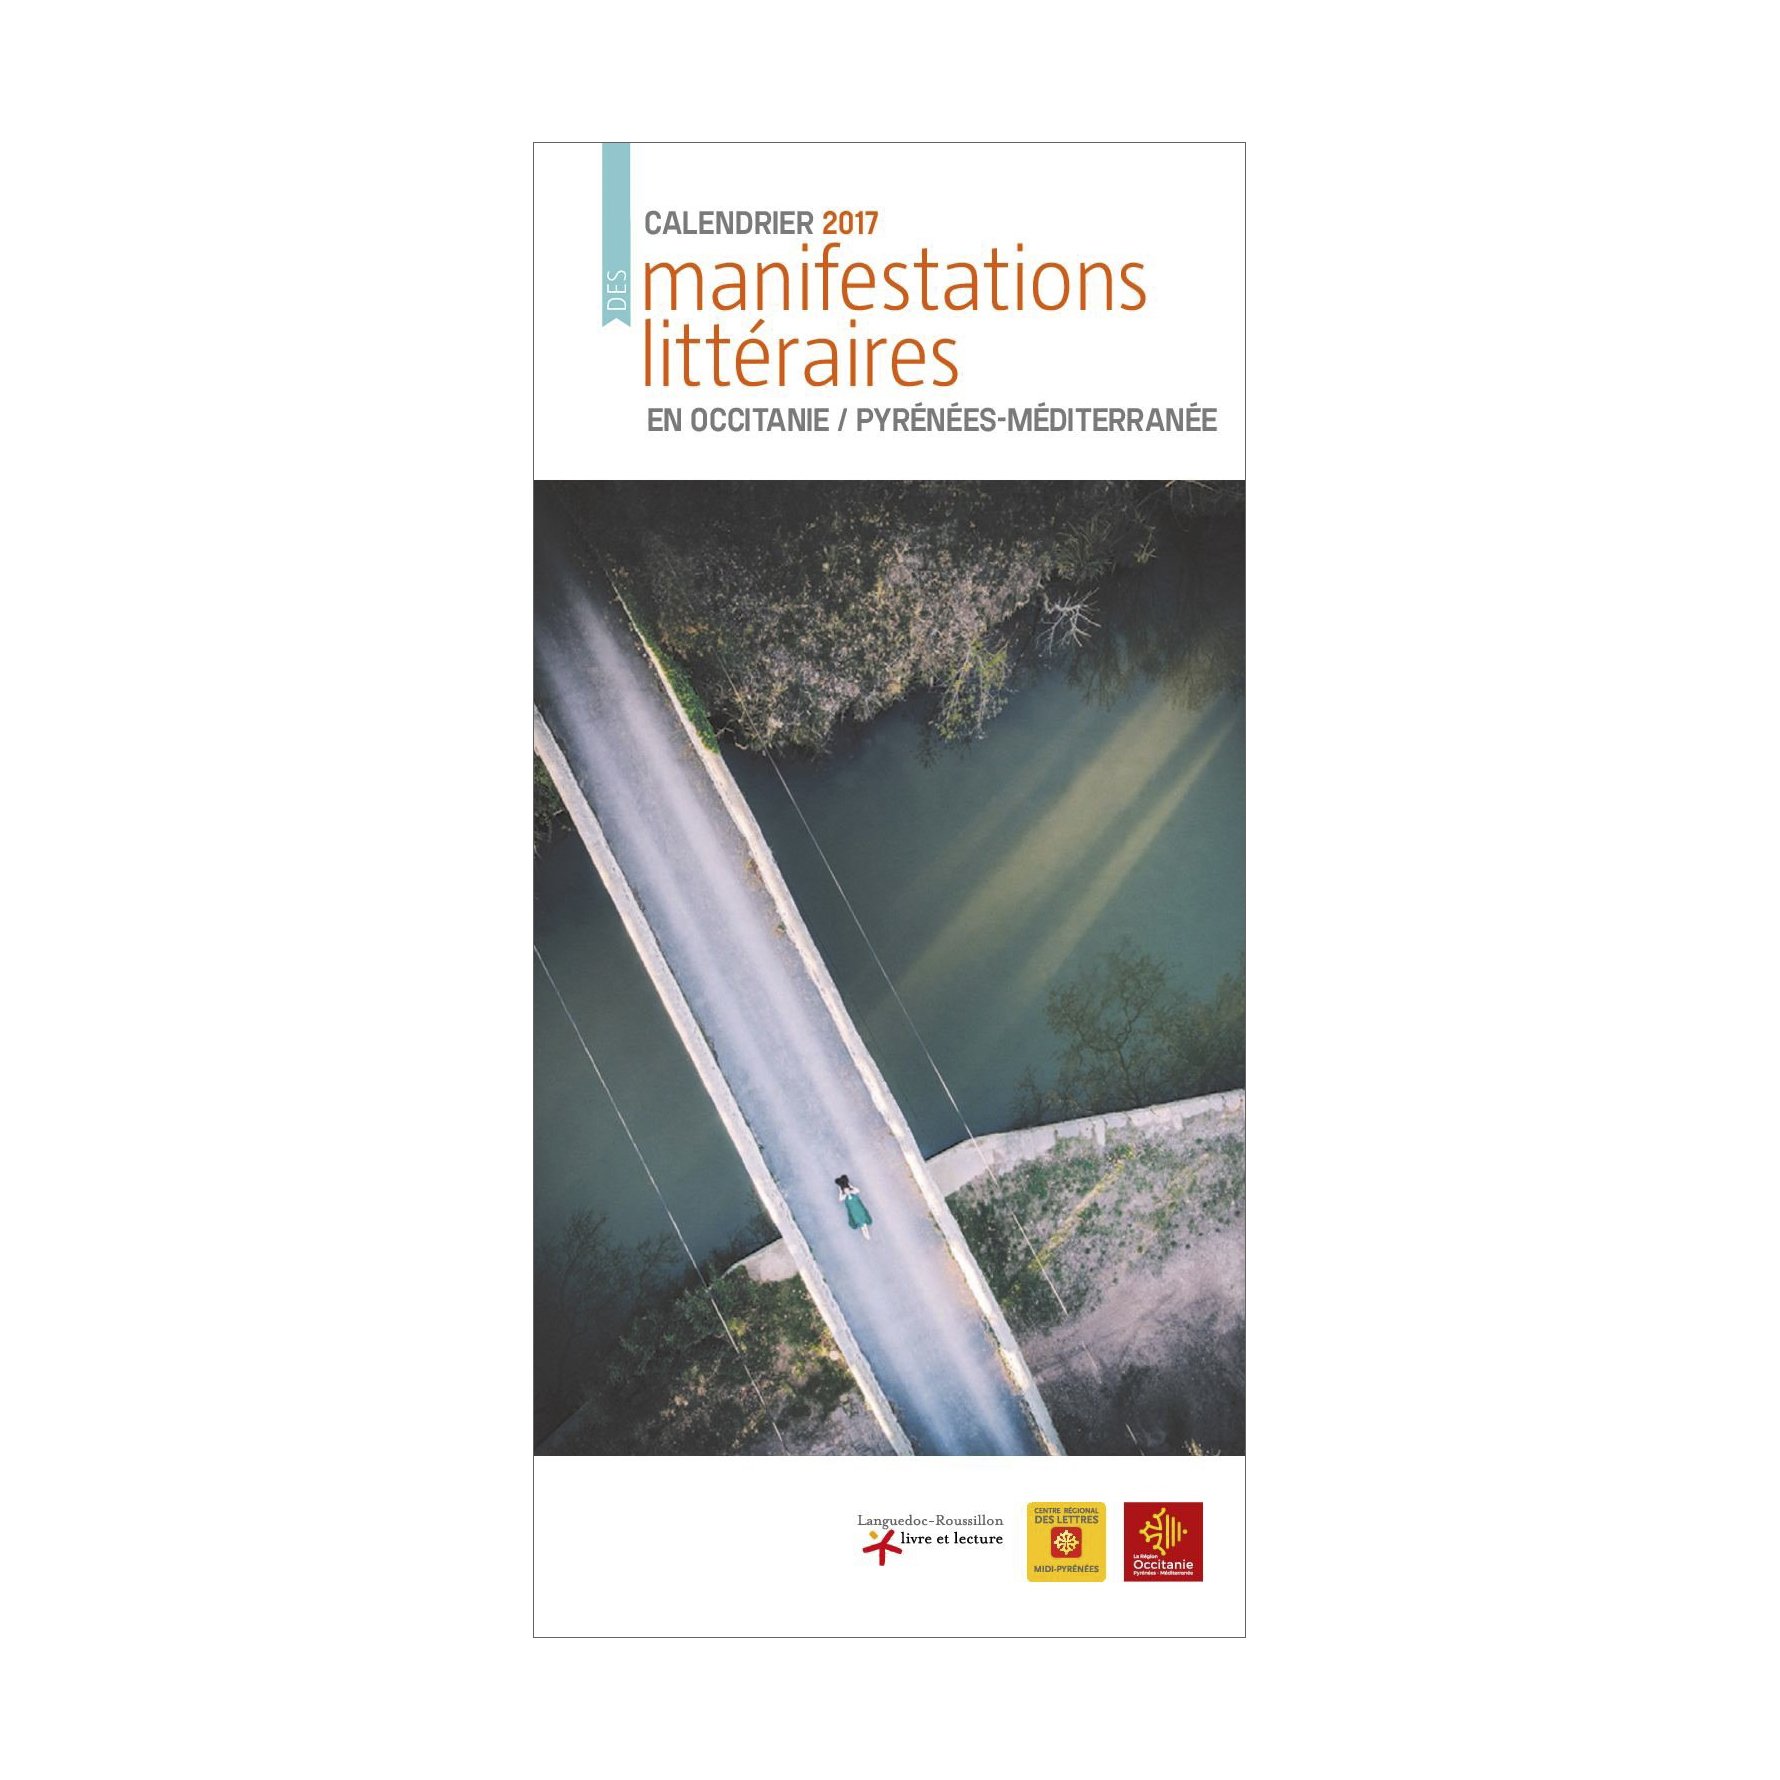 Languedoc-Roussillon Livre et lecture (LR2L)